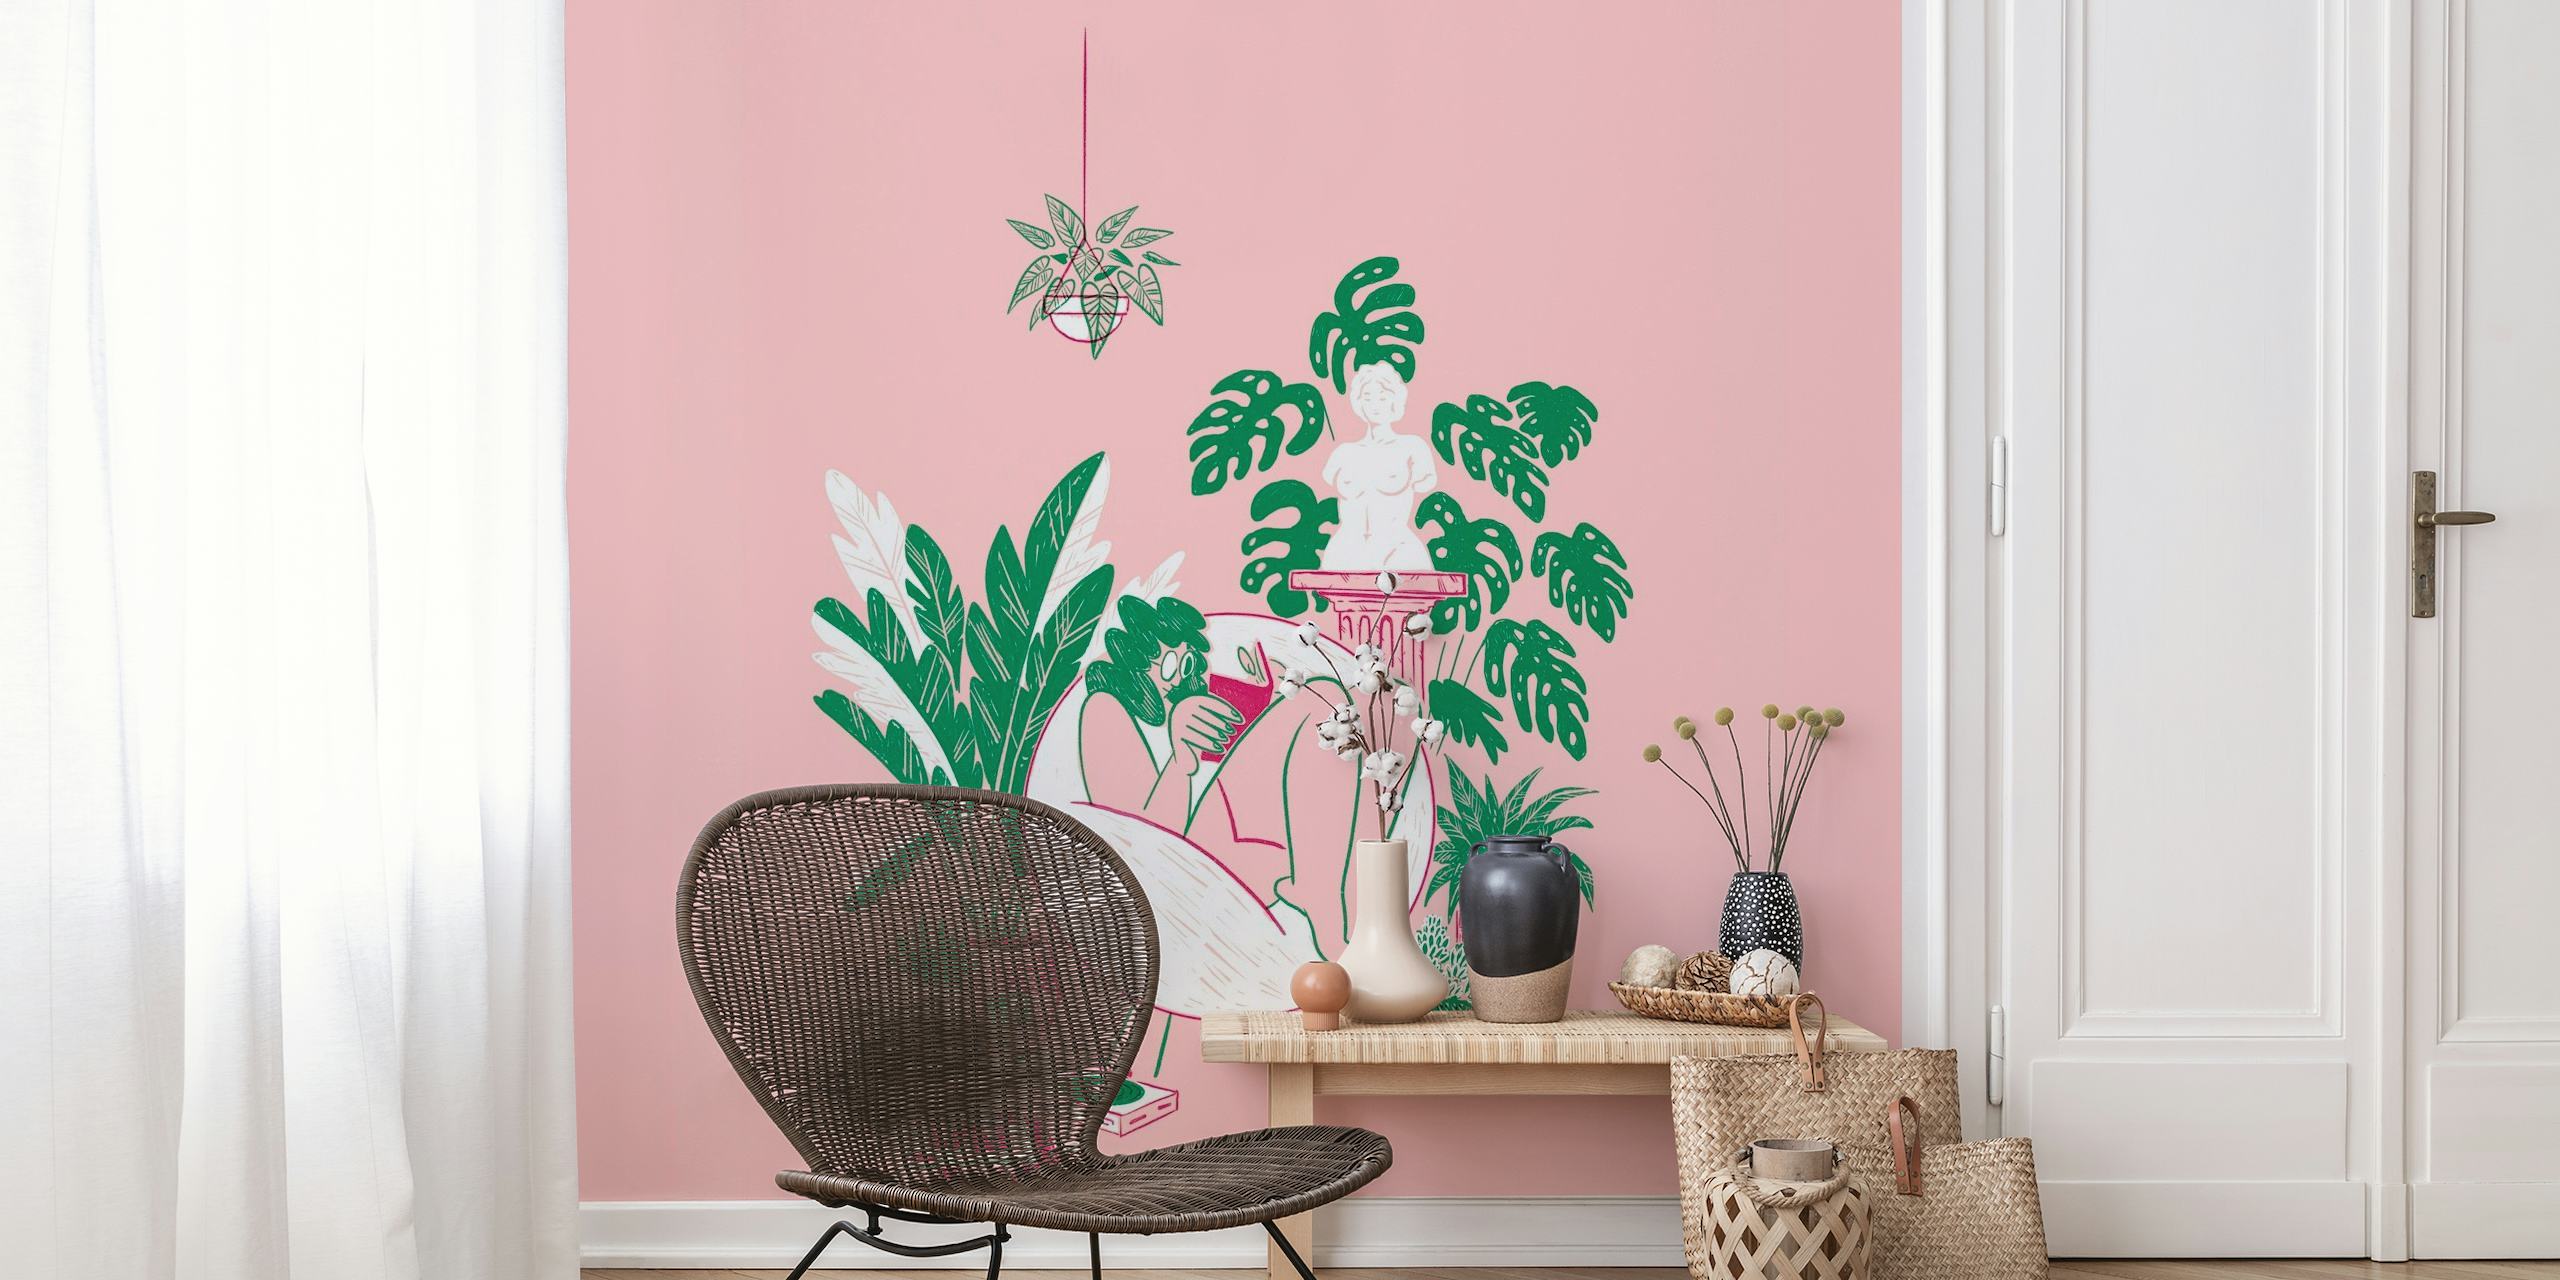 Ilustração de uma pessoa cercada por vasos de plantas em fundo rosa, capturando uma cena tranquila de jardim interno.